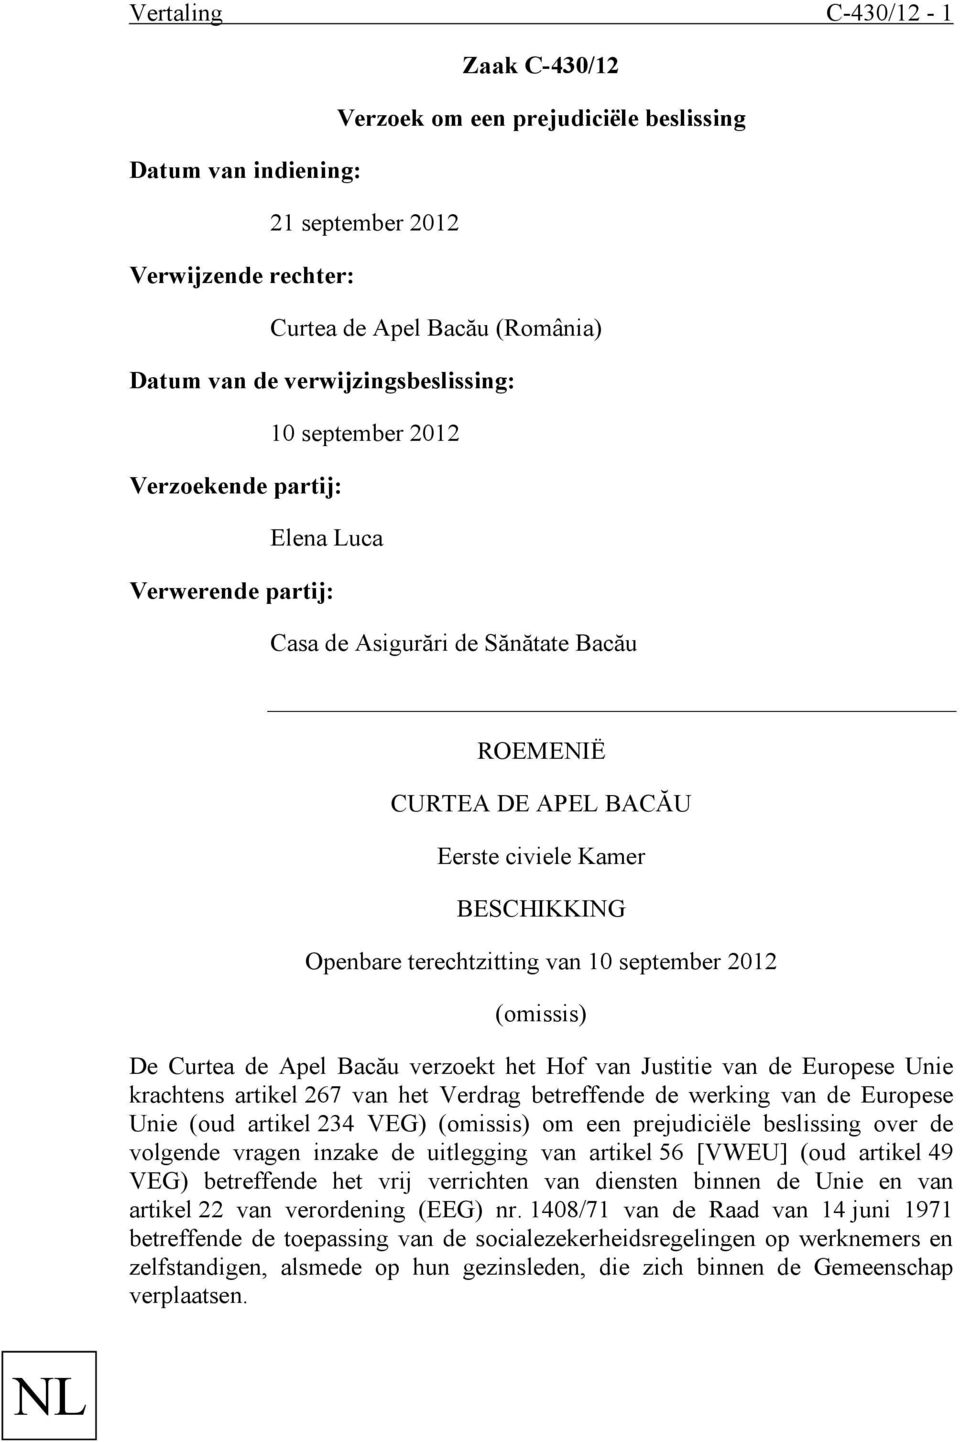 terechtzitting van 10 september 2012 (omissis) De Curtea de Apel Bacău verzoekt het Hof van Justitie van de Europese Unie krachtens artikel 267 van het Verdrag betreffende de werking van de Europese